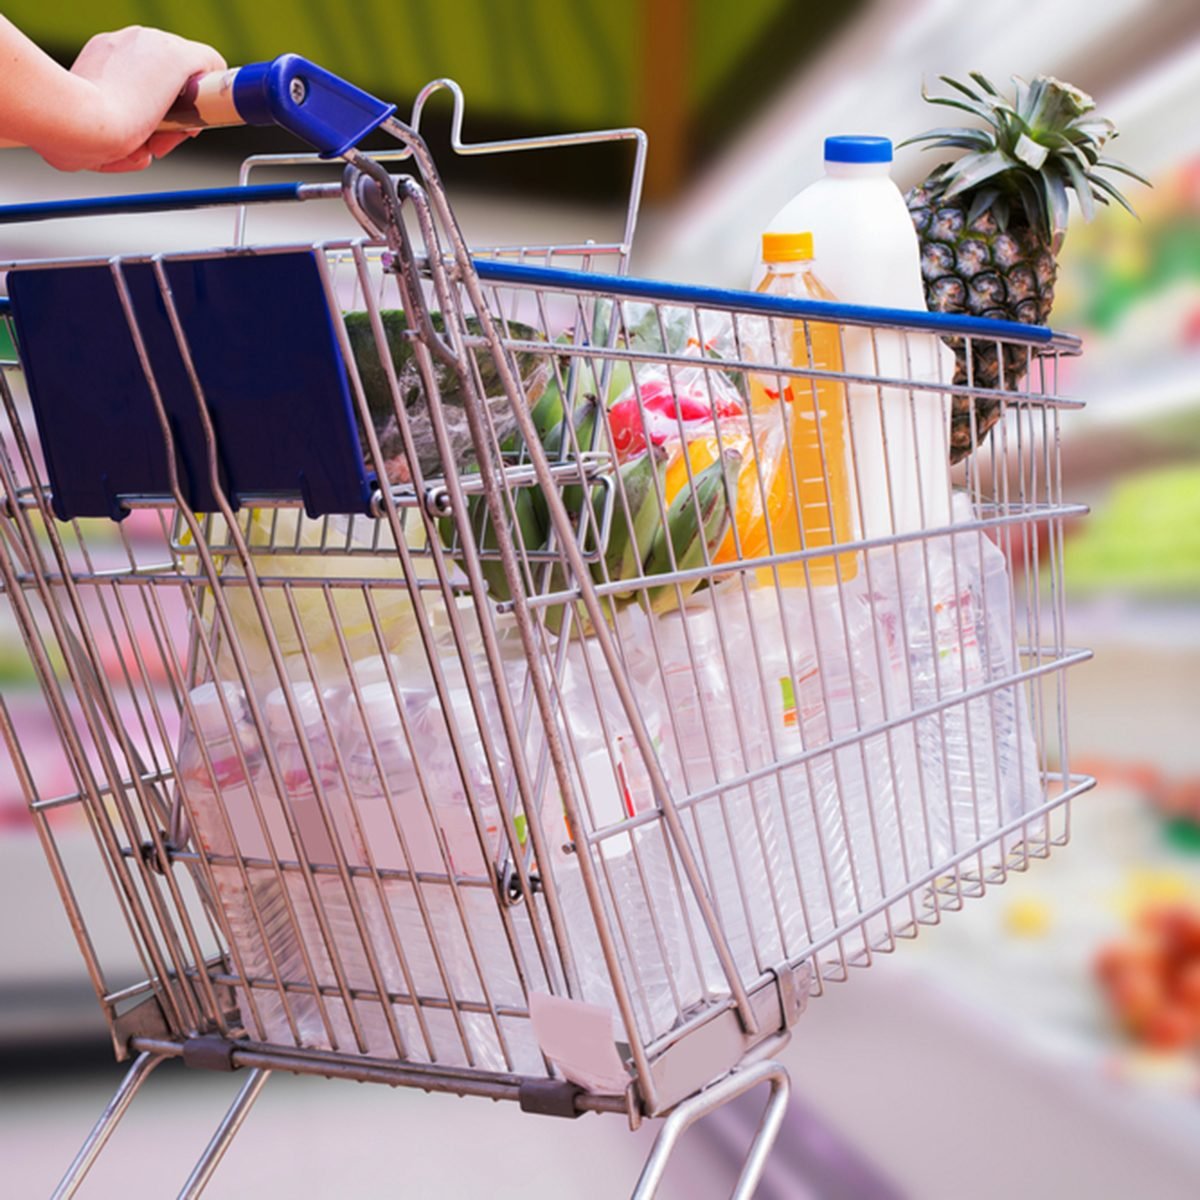 woman pushing shopping cart in supermarket